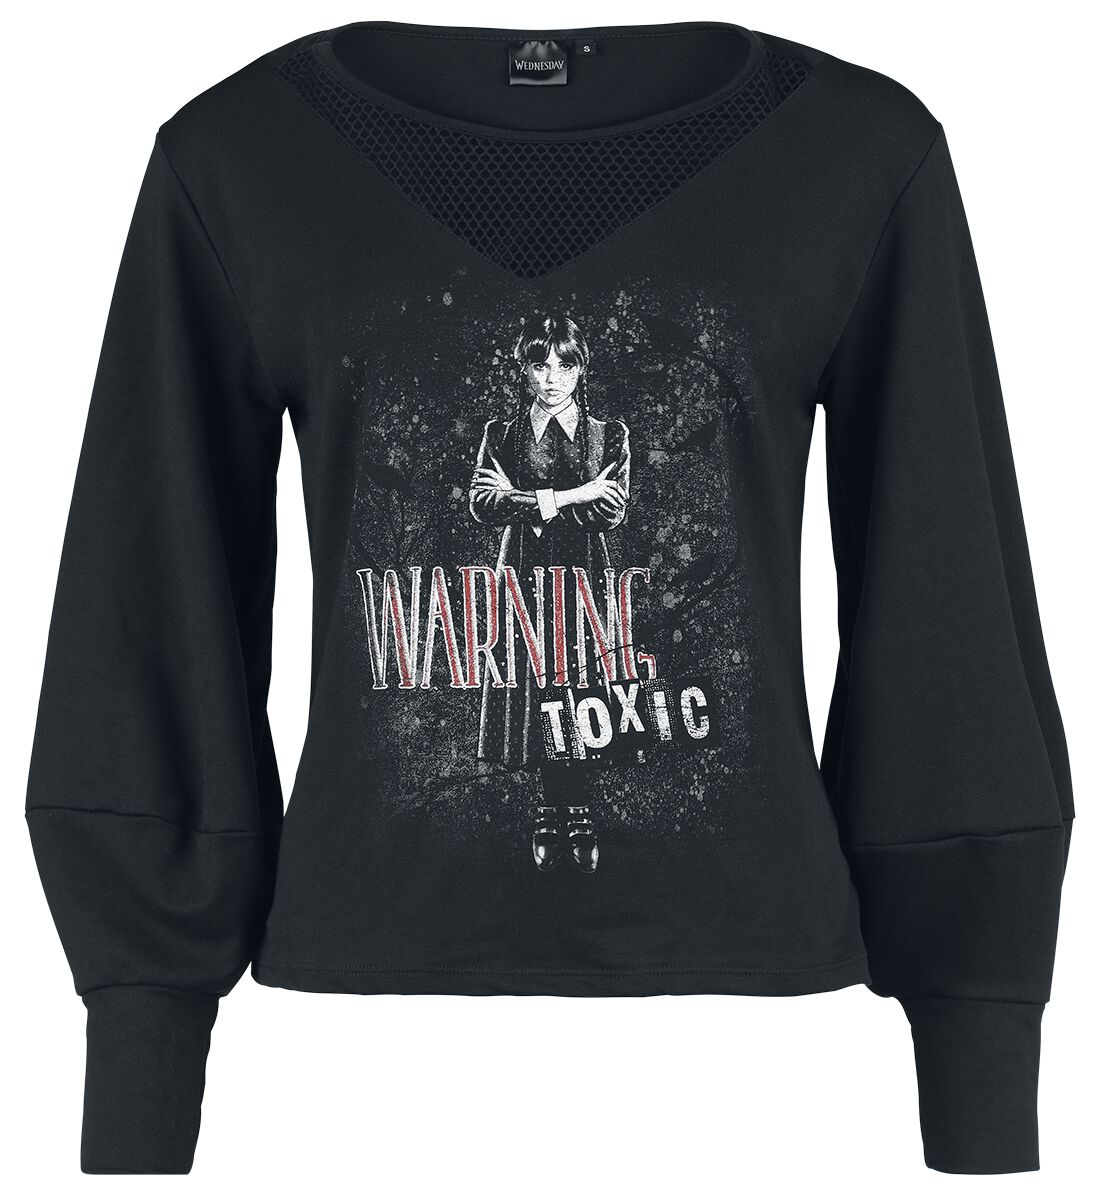 Wednesday Sweatshirt - Warning - Toxic - S bis XXL - für Damen - Größe S - schwarz  - EMP exklusives Merchandise!